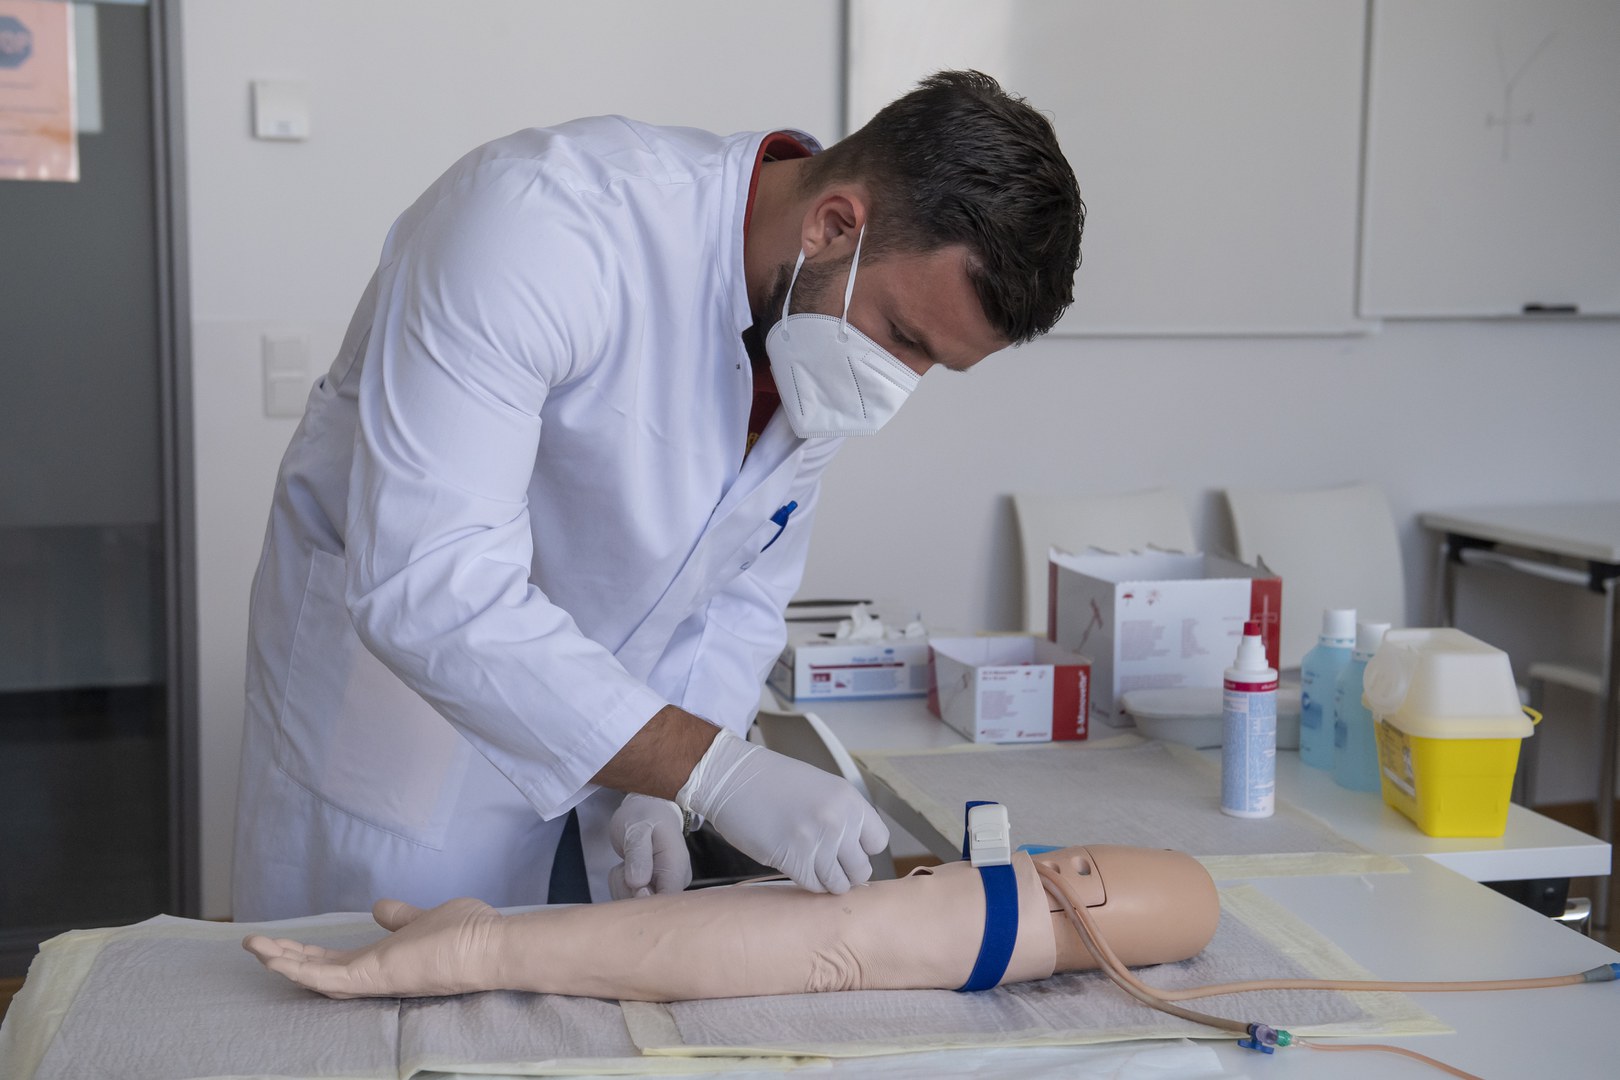 Ein Medizinstudent untersucht während der Prüfung einen Arm.